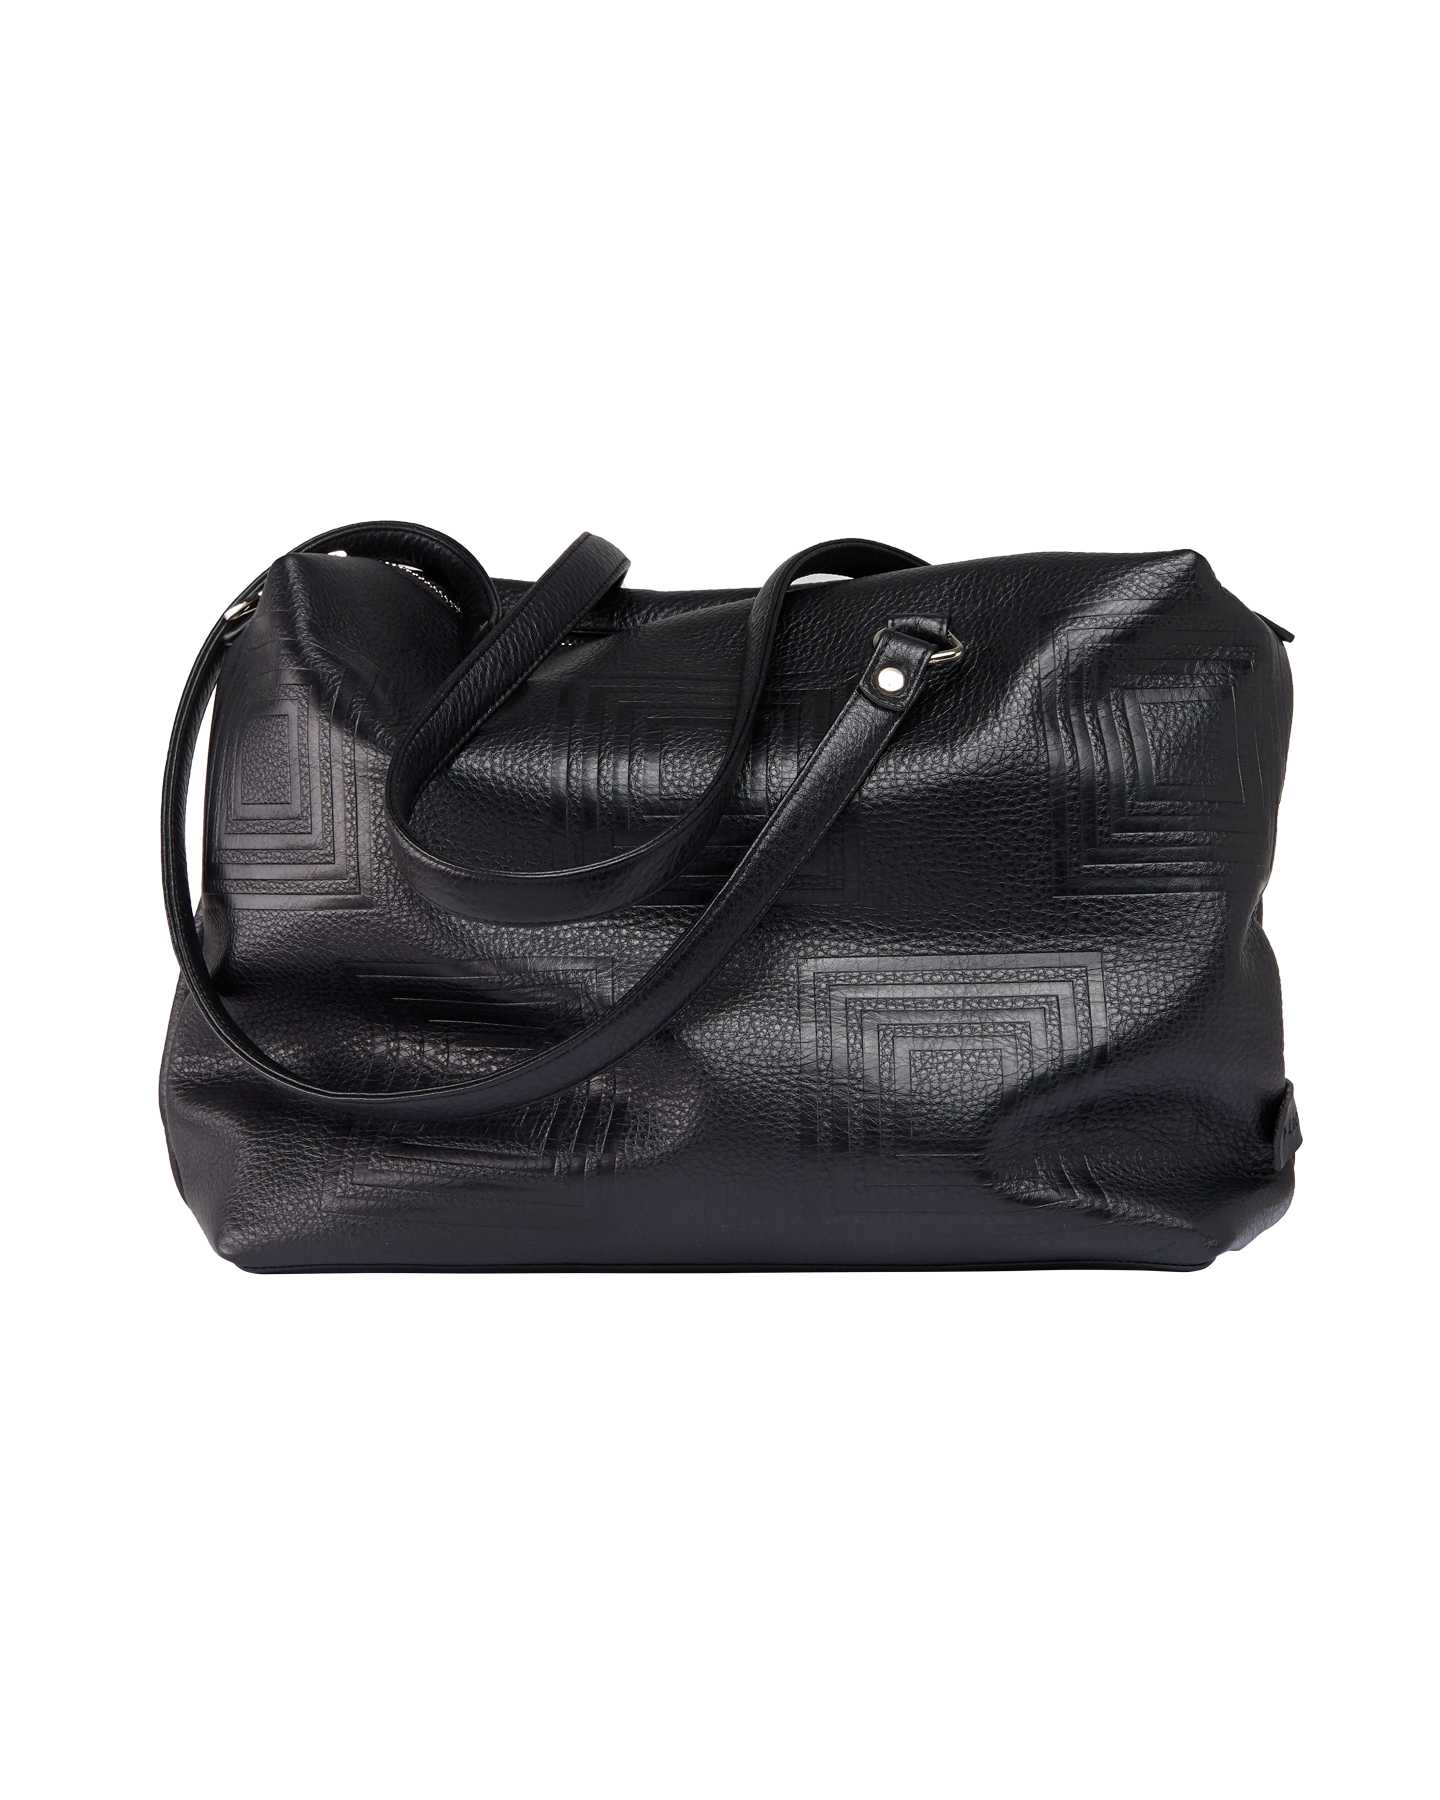 Сумка дорожная объемная Model Fit Bag Lachella - Фабрика сумок «Lachella»